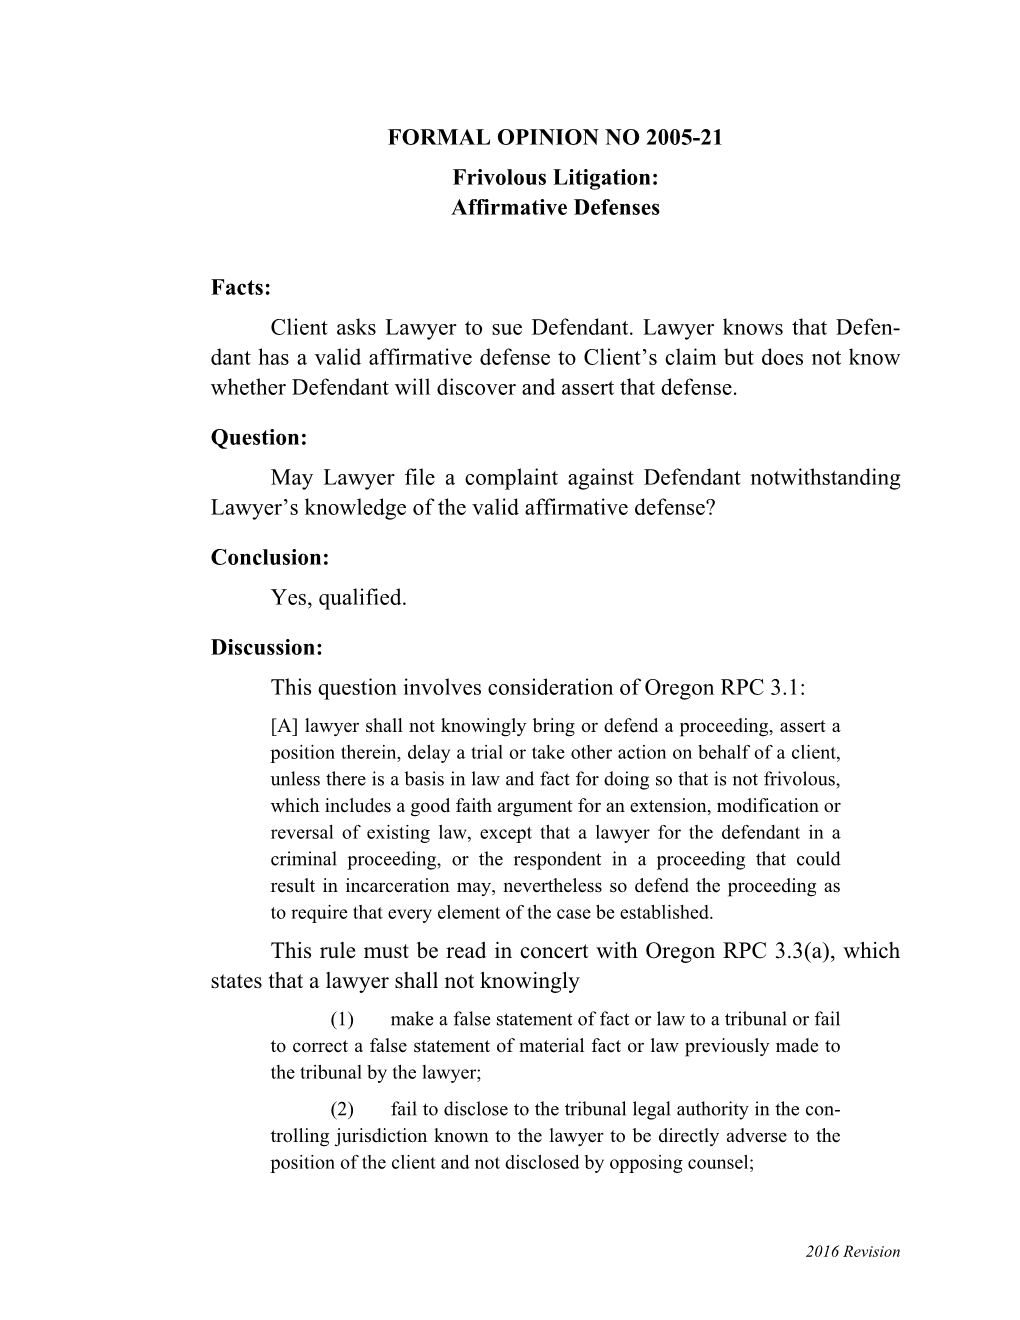 2005-21: Frivolous Litigation: Affirmative Defenses